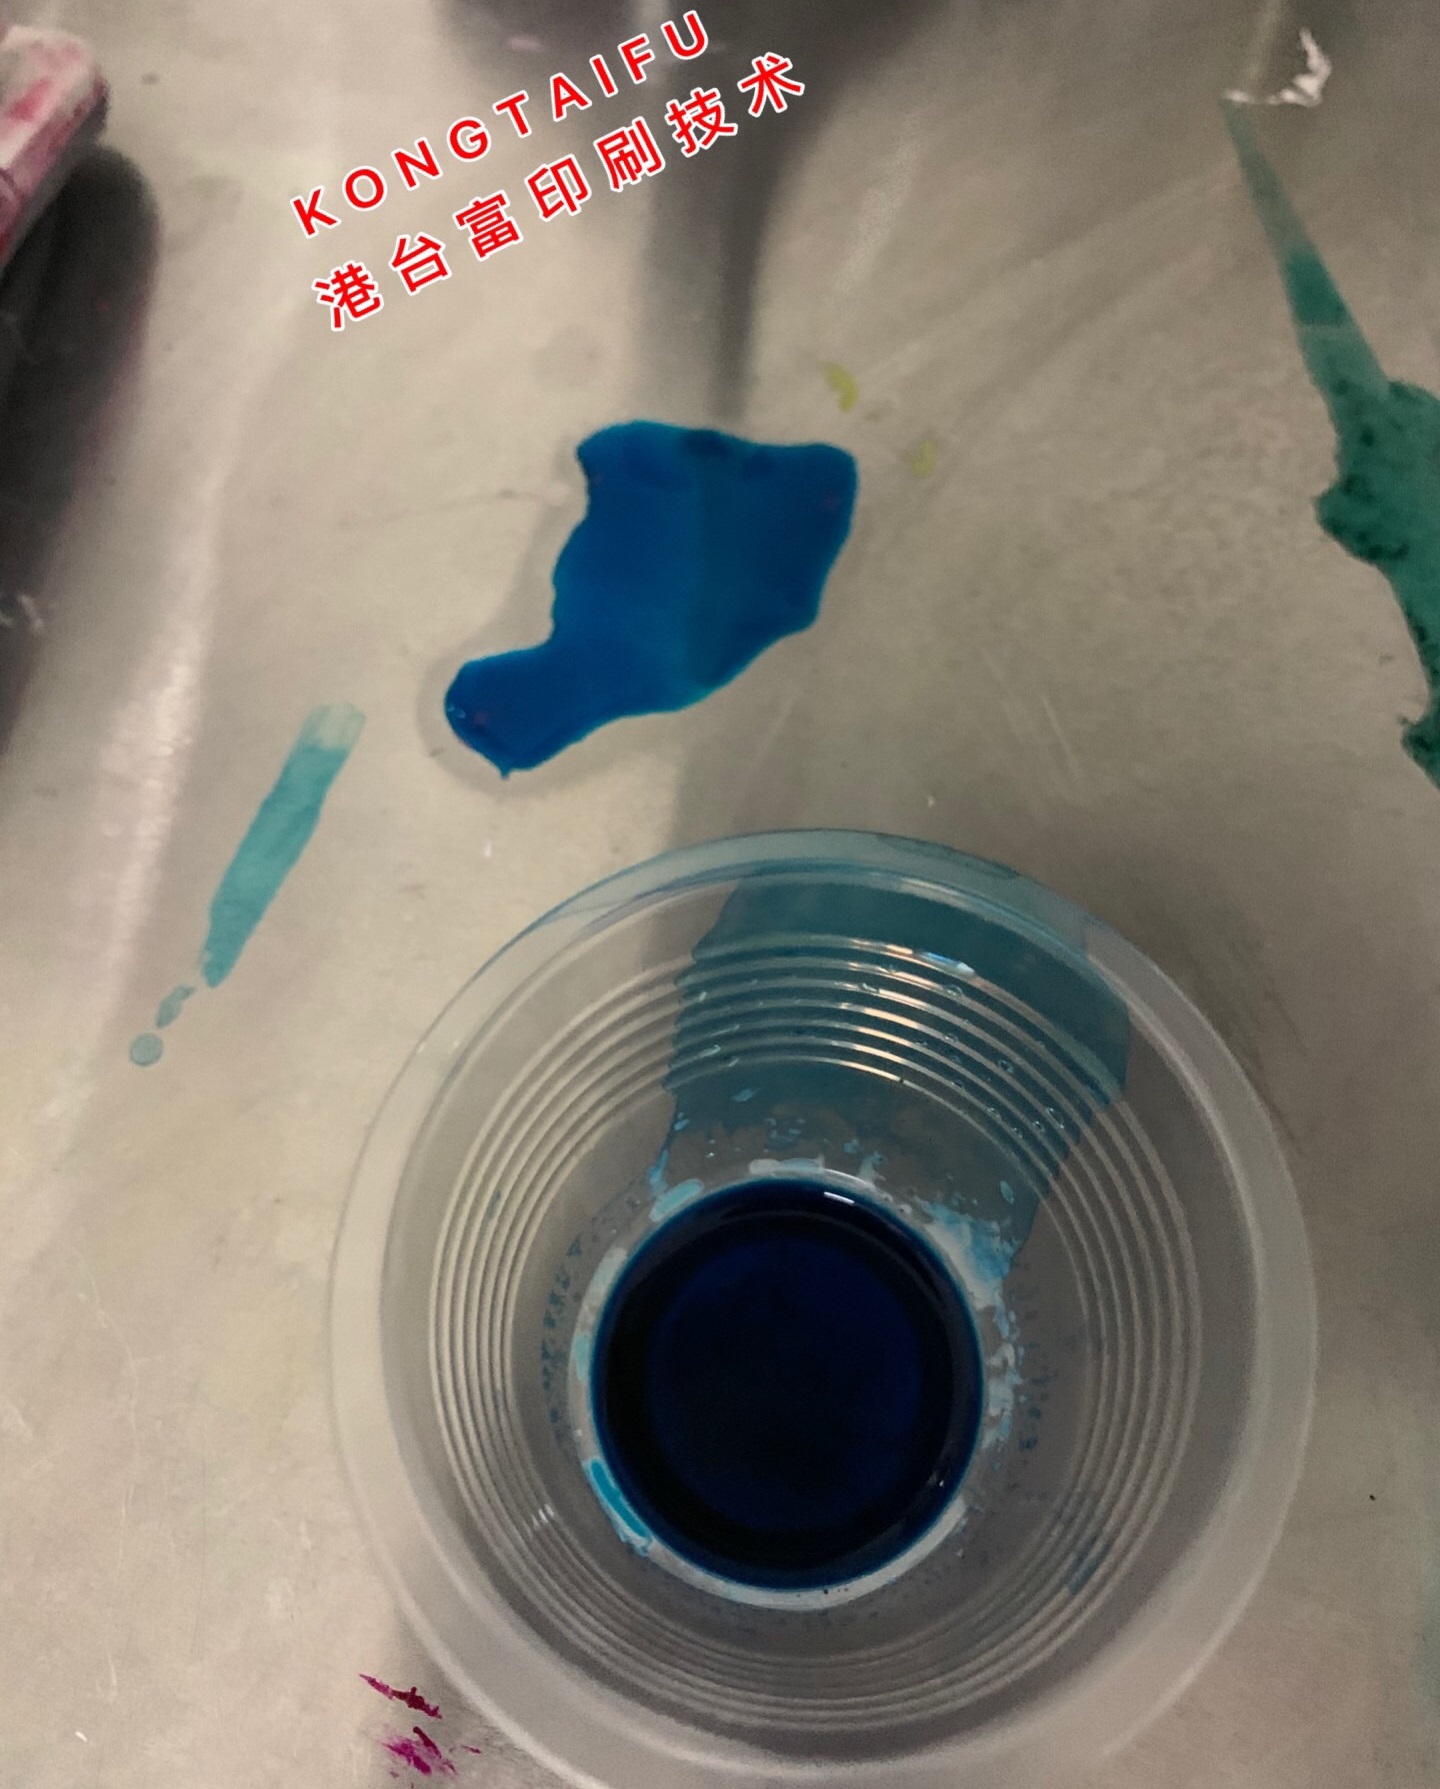 供应吸收紫外线添加染料683nm红外染料 偶氮染料蓝褐色 防伪注塑